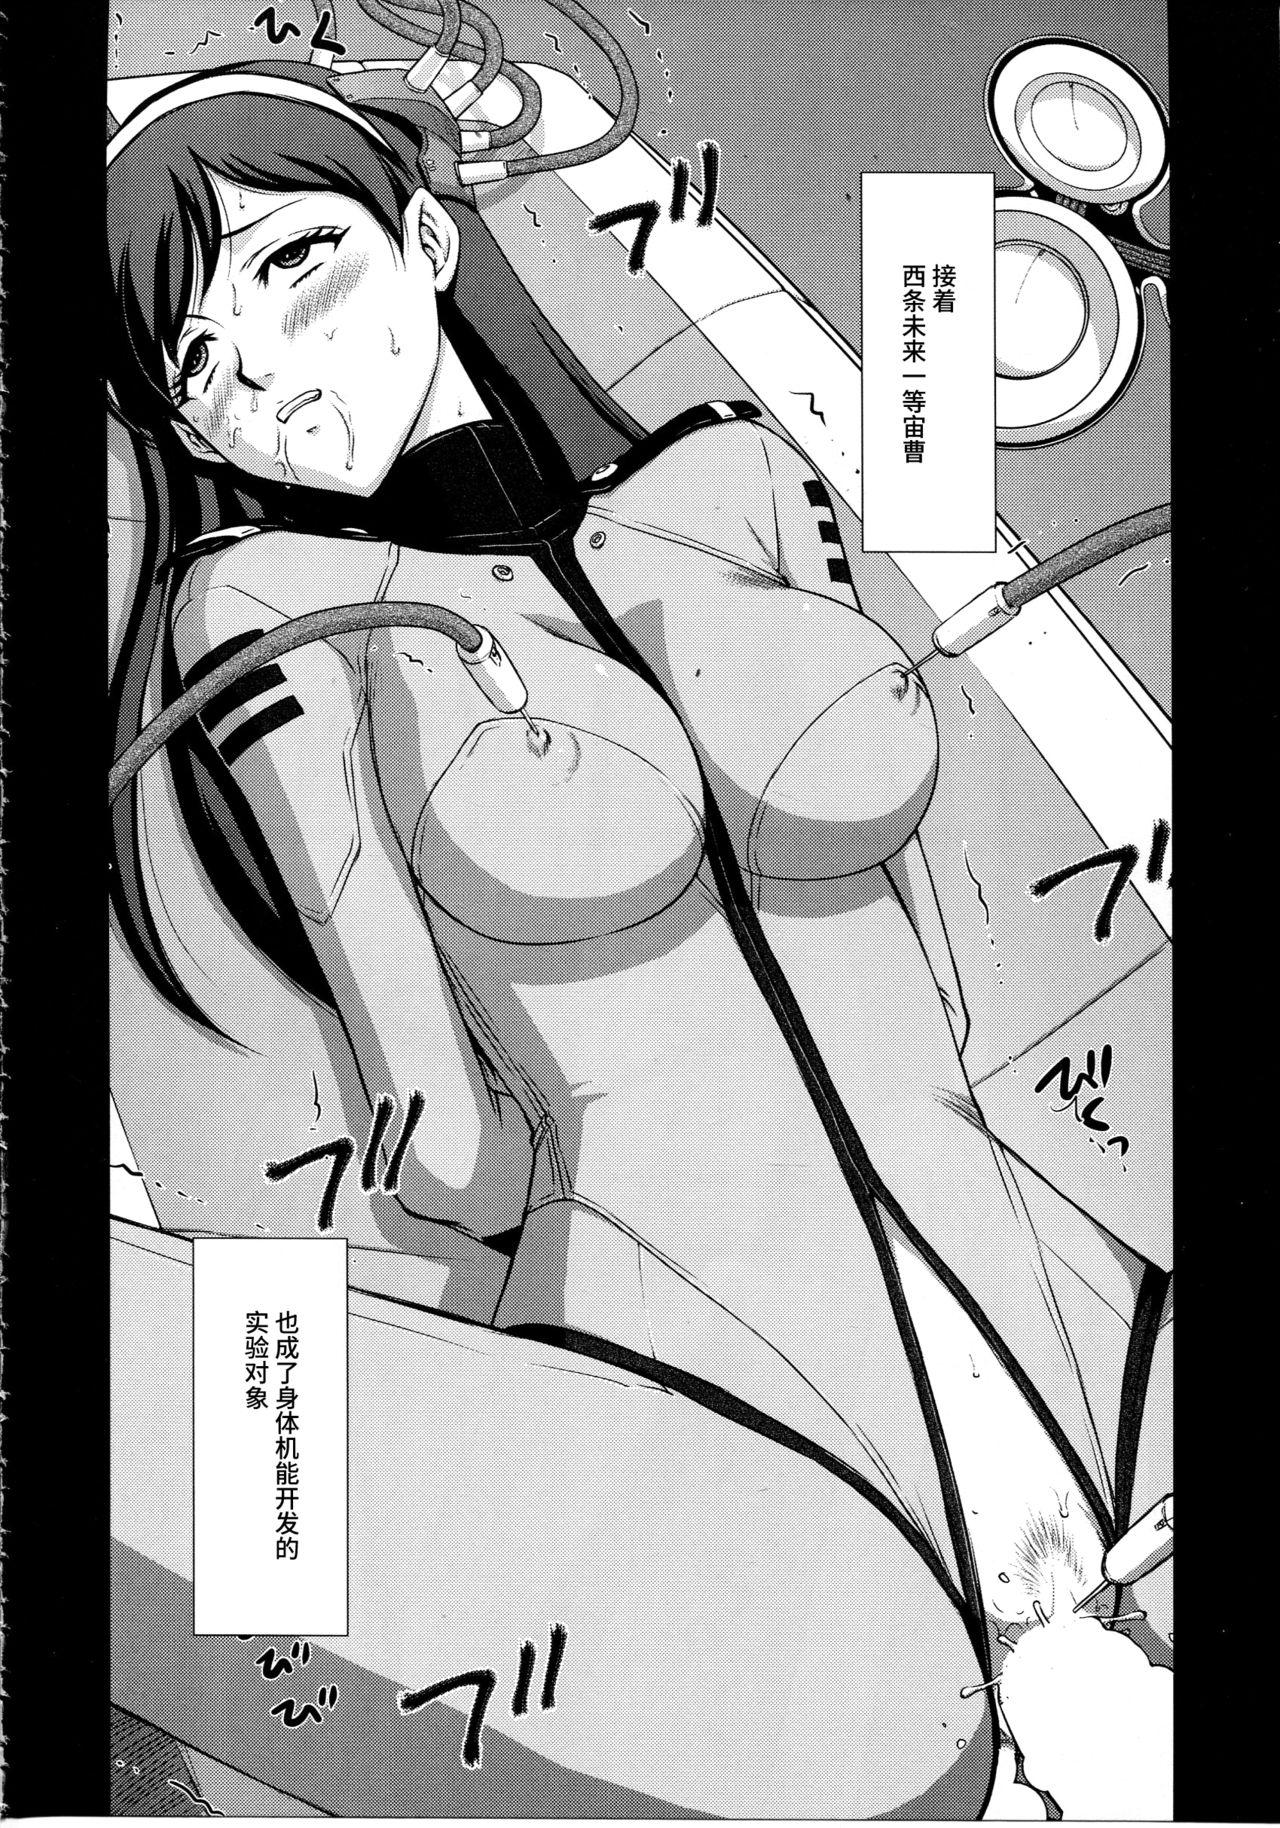 Nasty Free Porn Yuki no Shizuku - Space battleship yamato 2199 Hair - Page 7